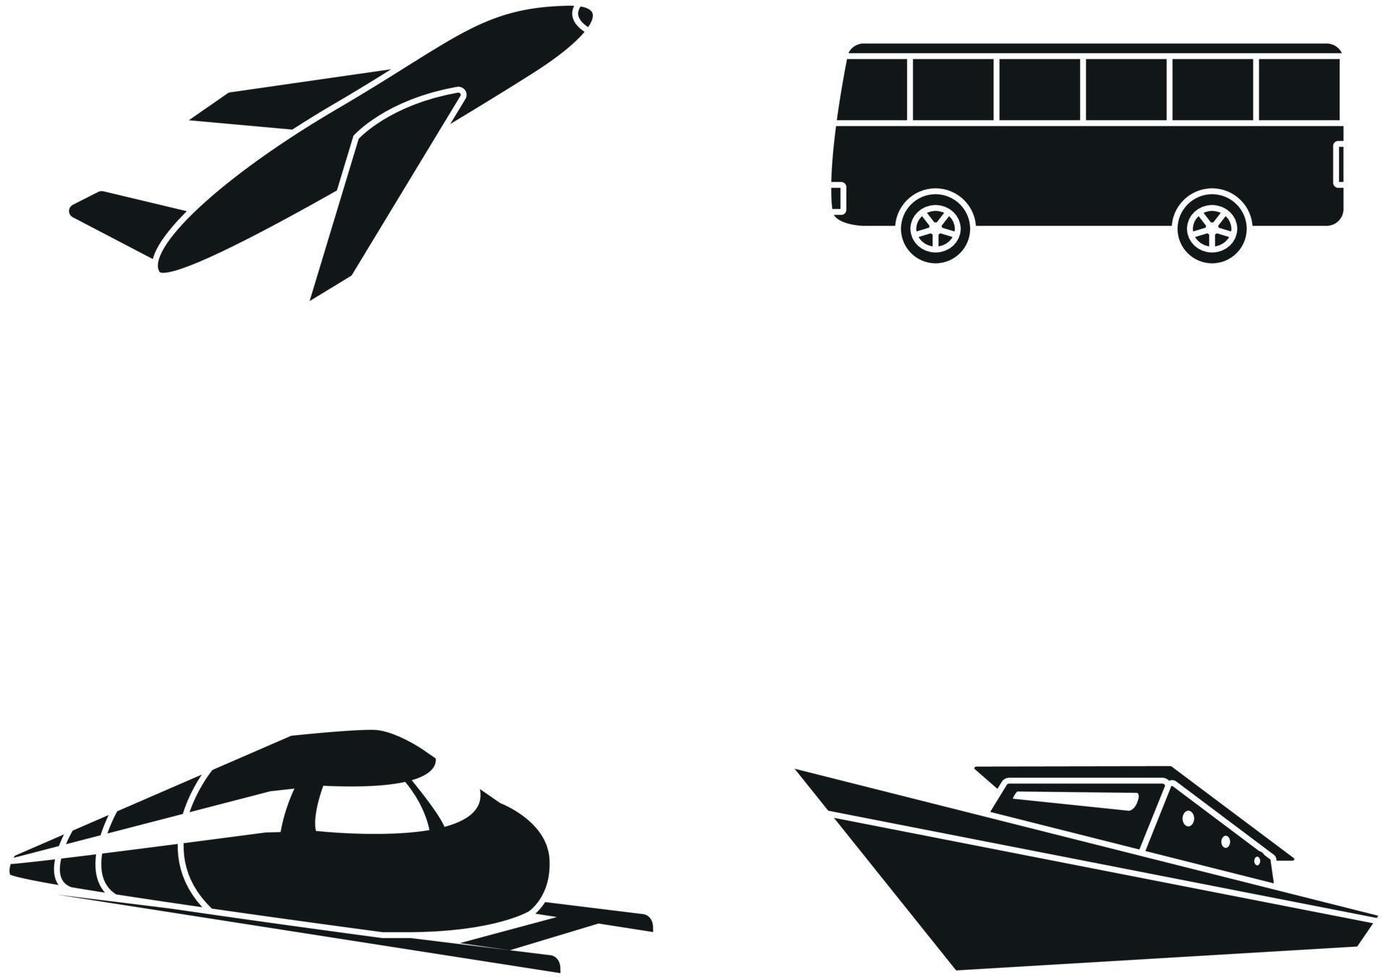 imagens de ícone de transporte vetor avião, ônibus, trem, navio